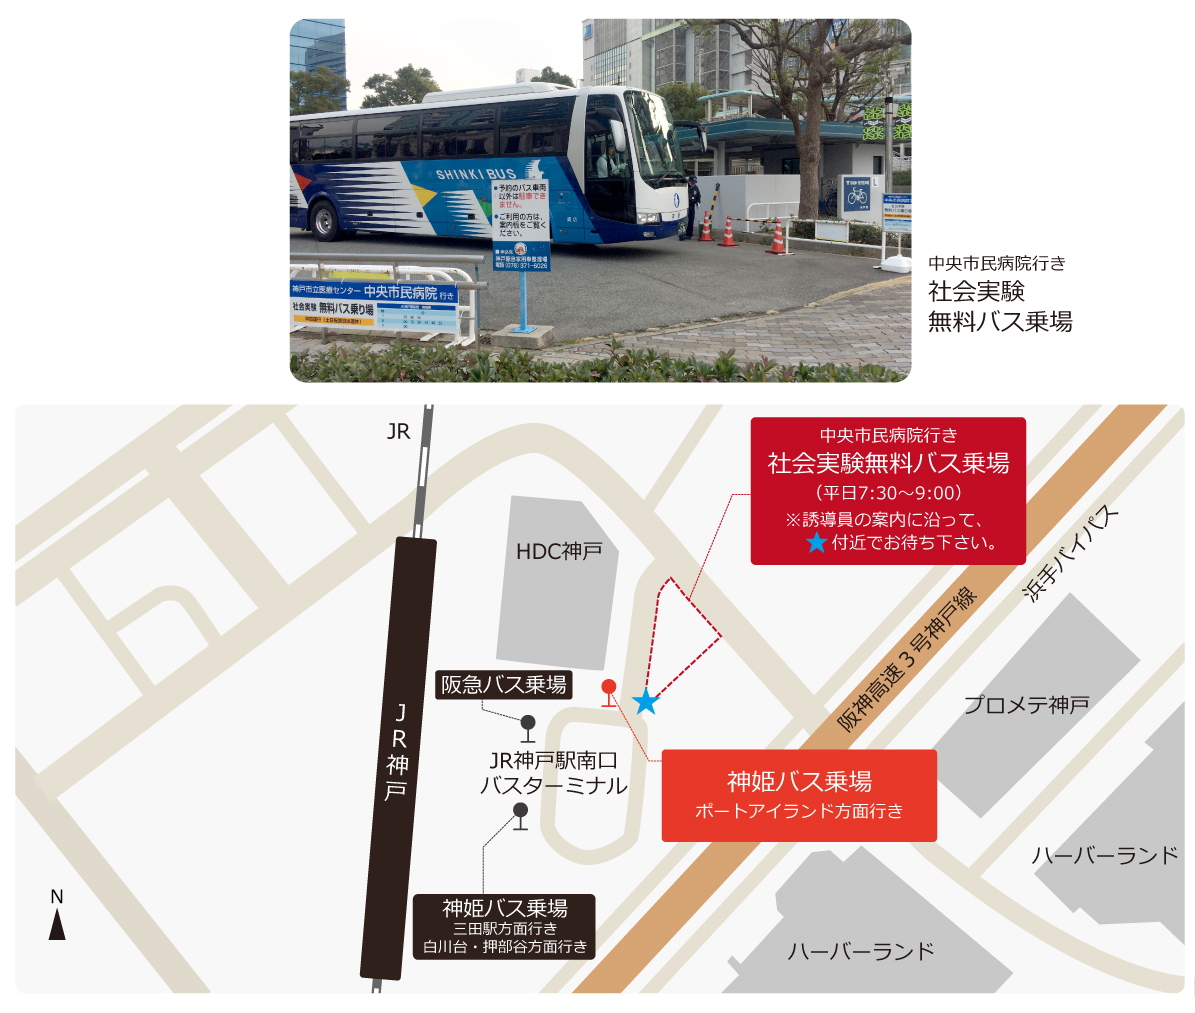 JR神戸駅のバス乗り場は、駅の南側バスロータリーにございます。